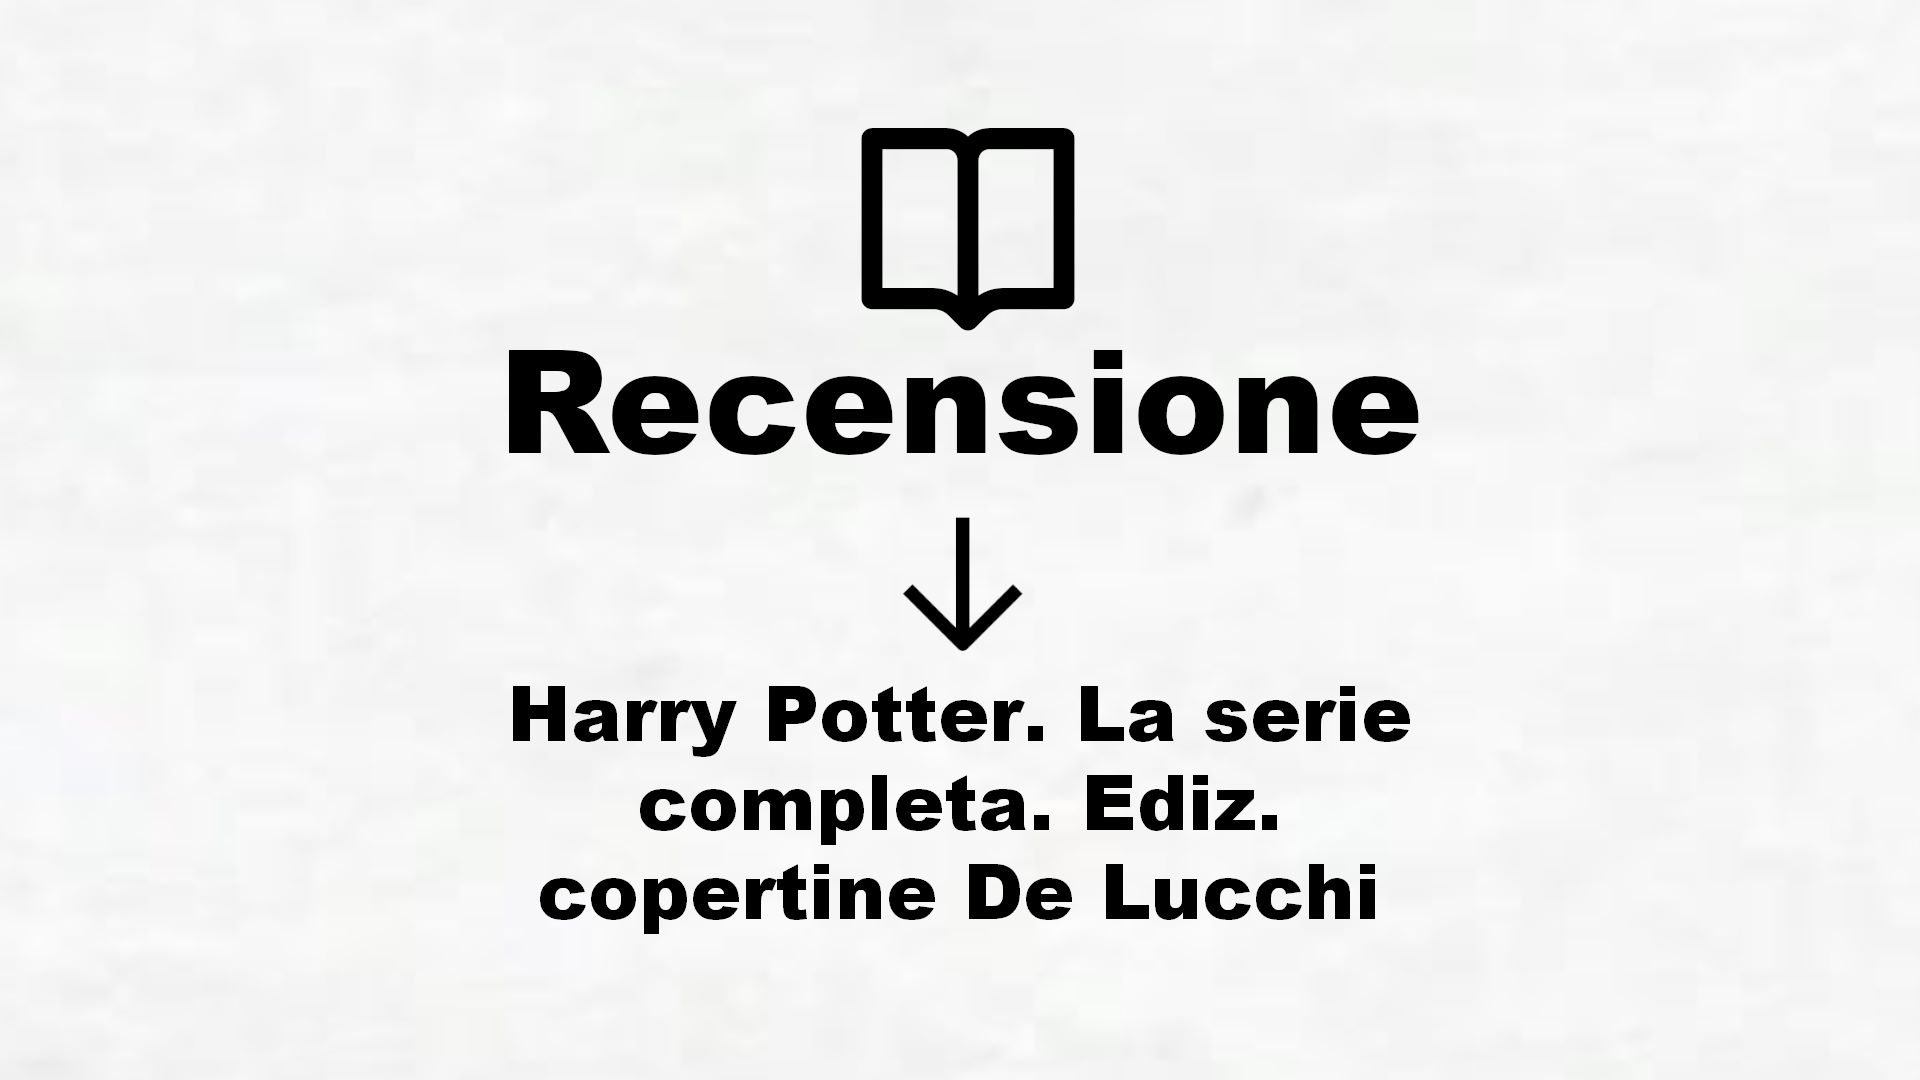 Harry Potter. La serie completa. Ediz. copertine De Lucchi – Recensione Libro